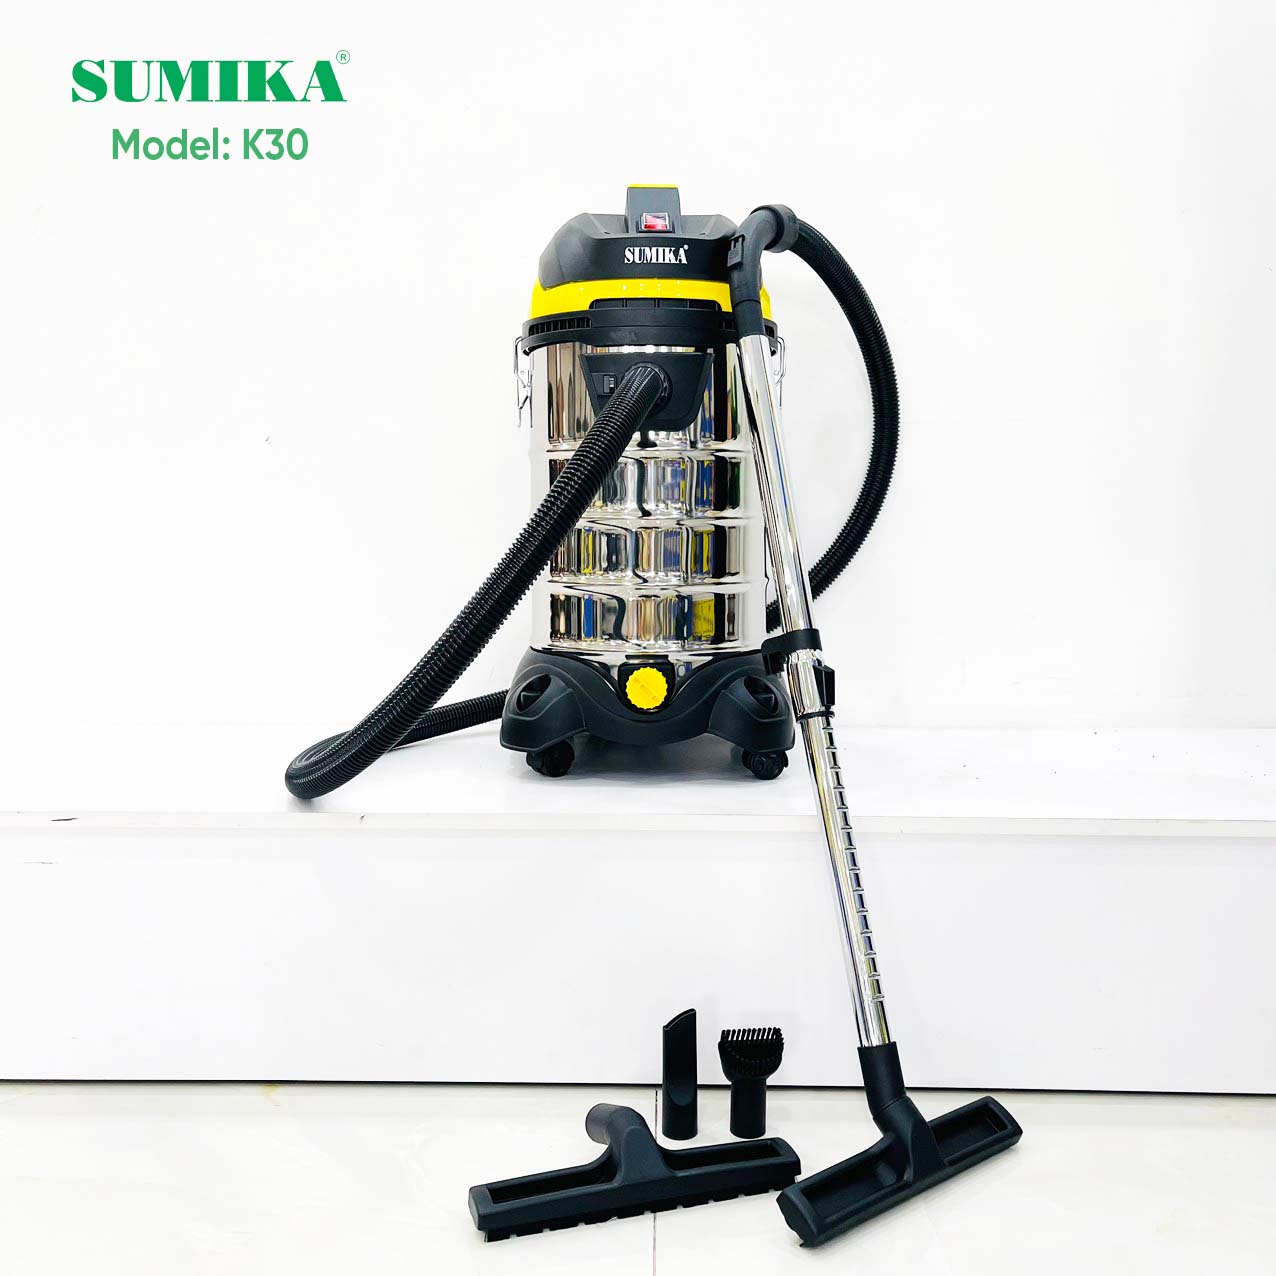 Sumika K30 - 1800W industrial vacuum cleaner, Hepa filter